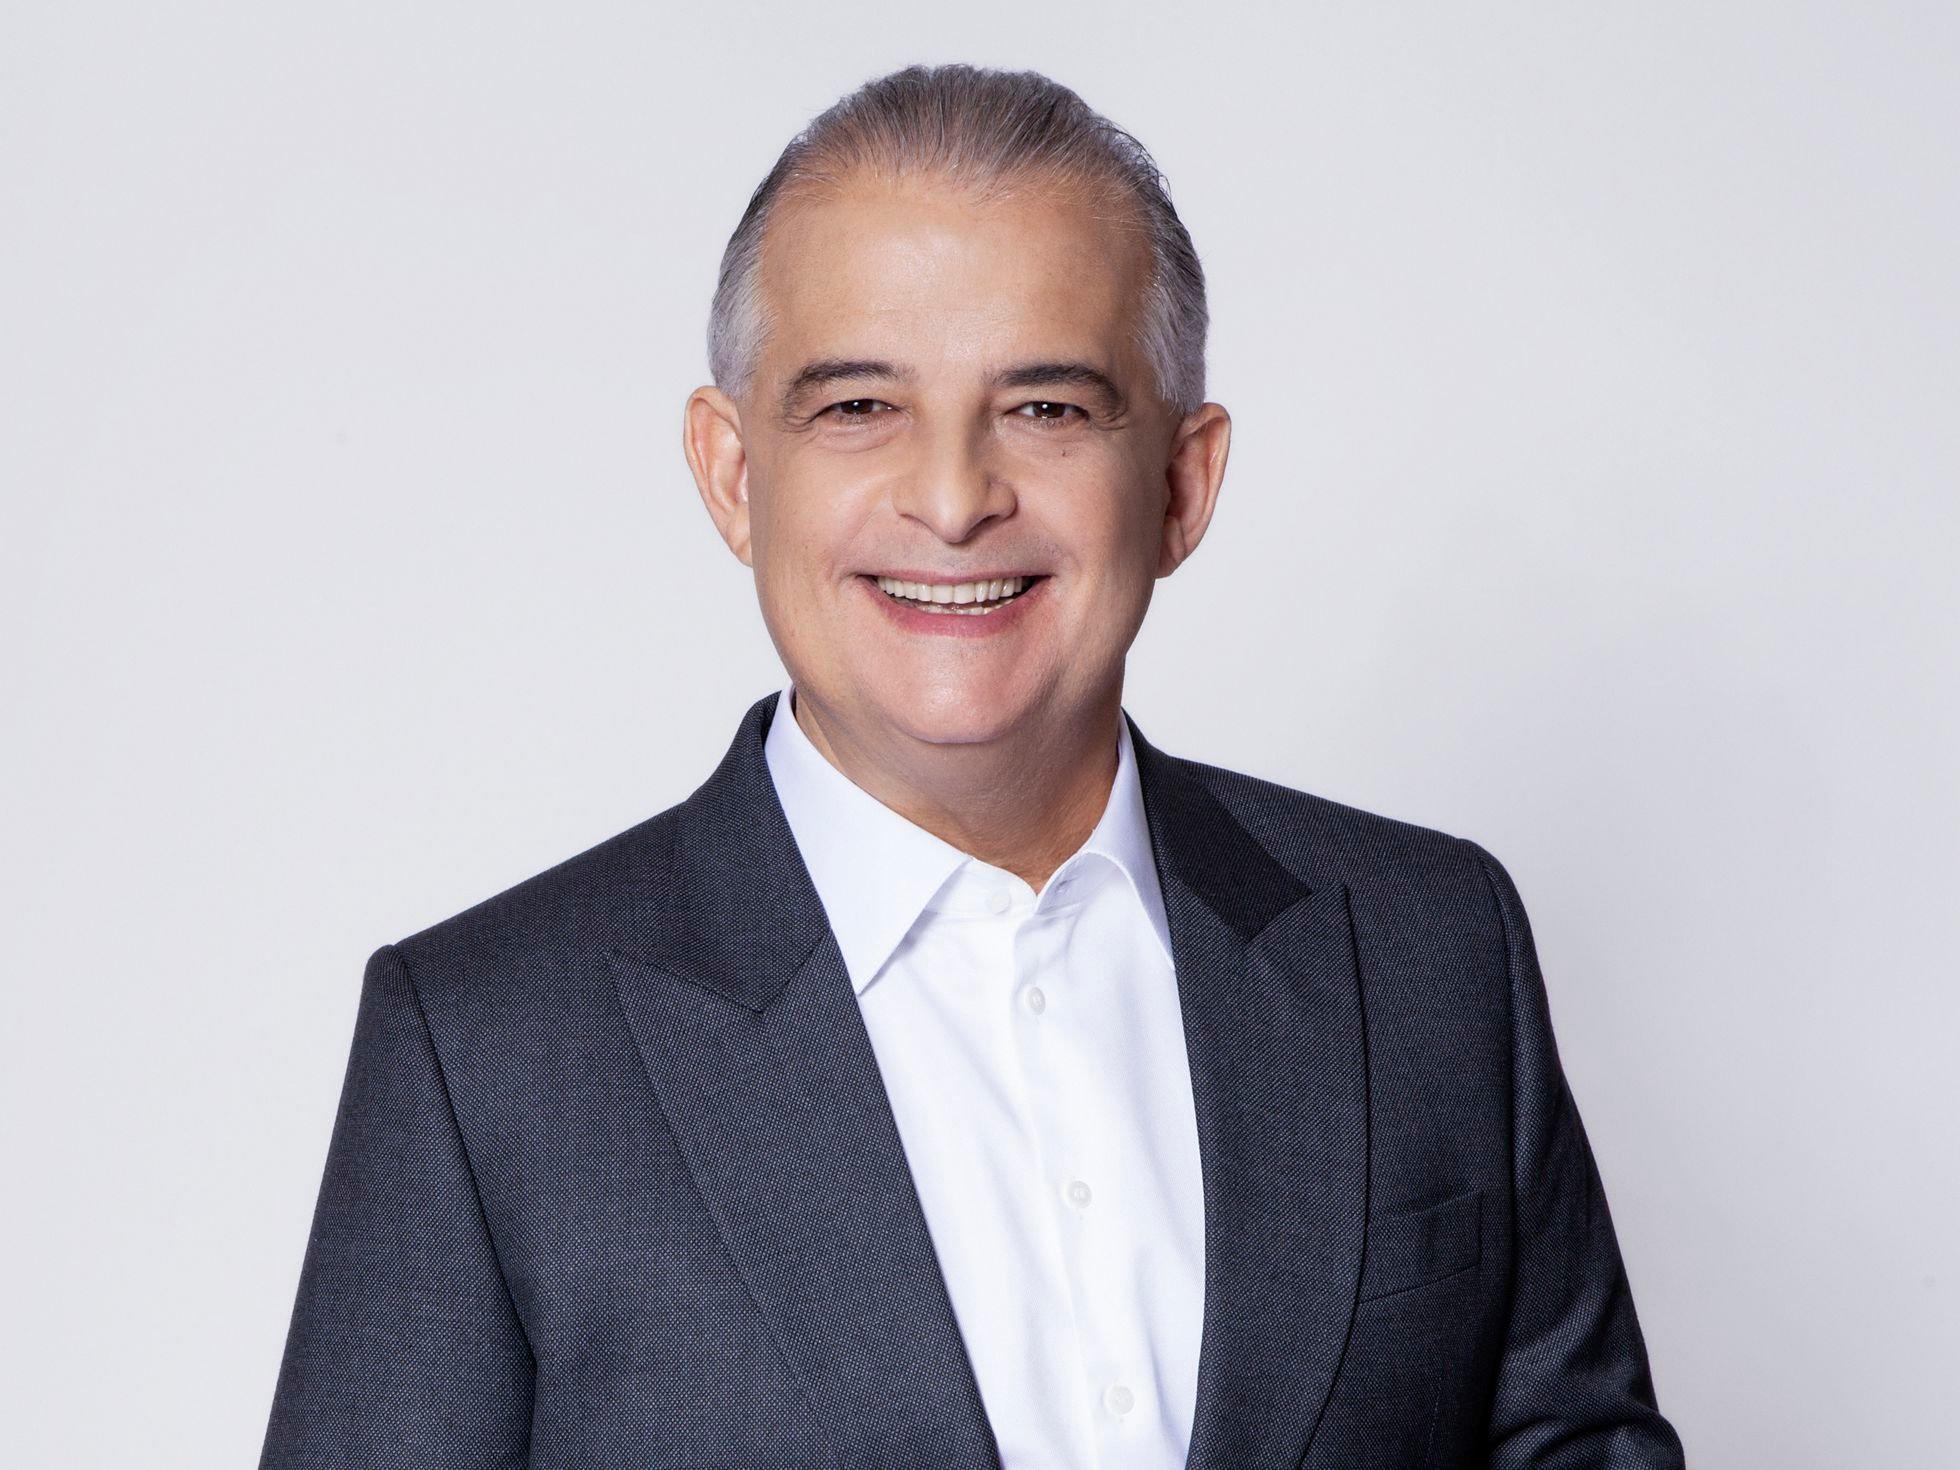 Márcio França, candidato ao governo de São Paulo pelo PSB. Ele é branco, tem cabelo liso e grisalho e sorri para a câmera, sob fundo branco- Metrópoles